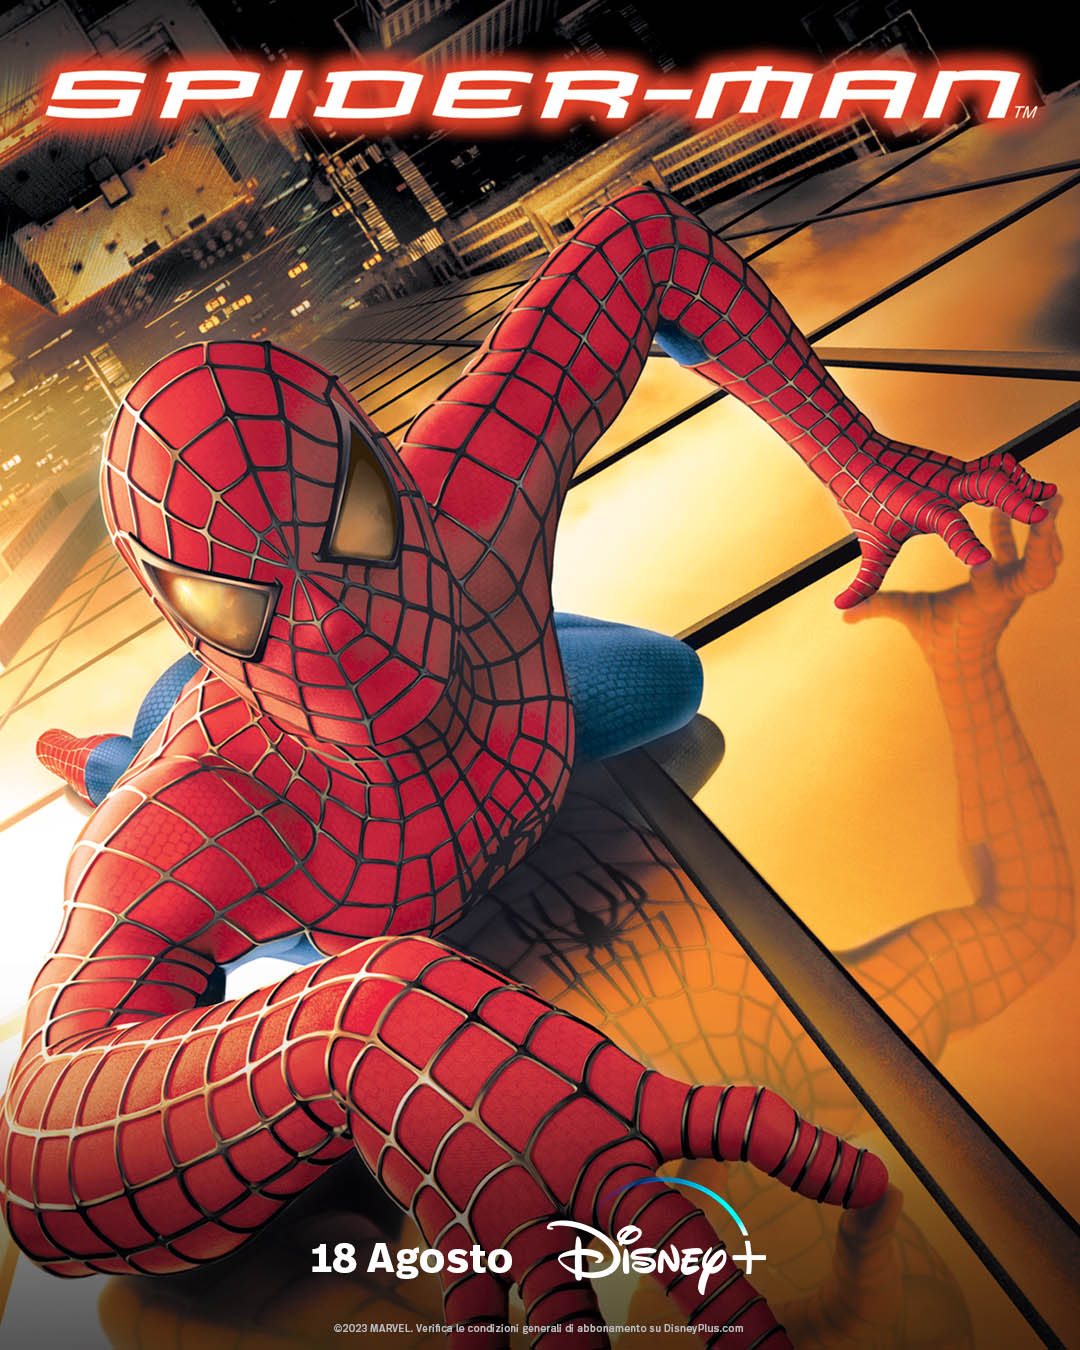 Spider-Man (2002) - Poster Disney+